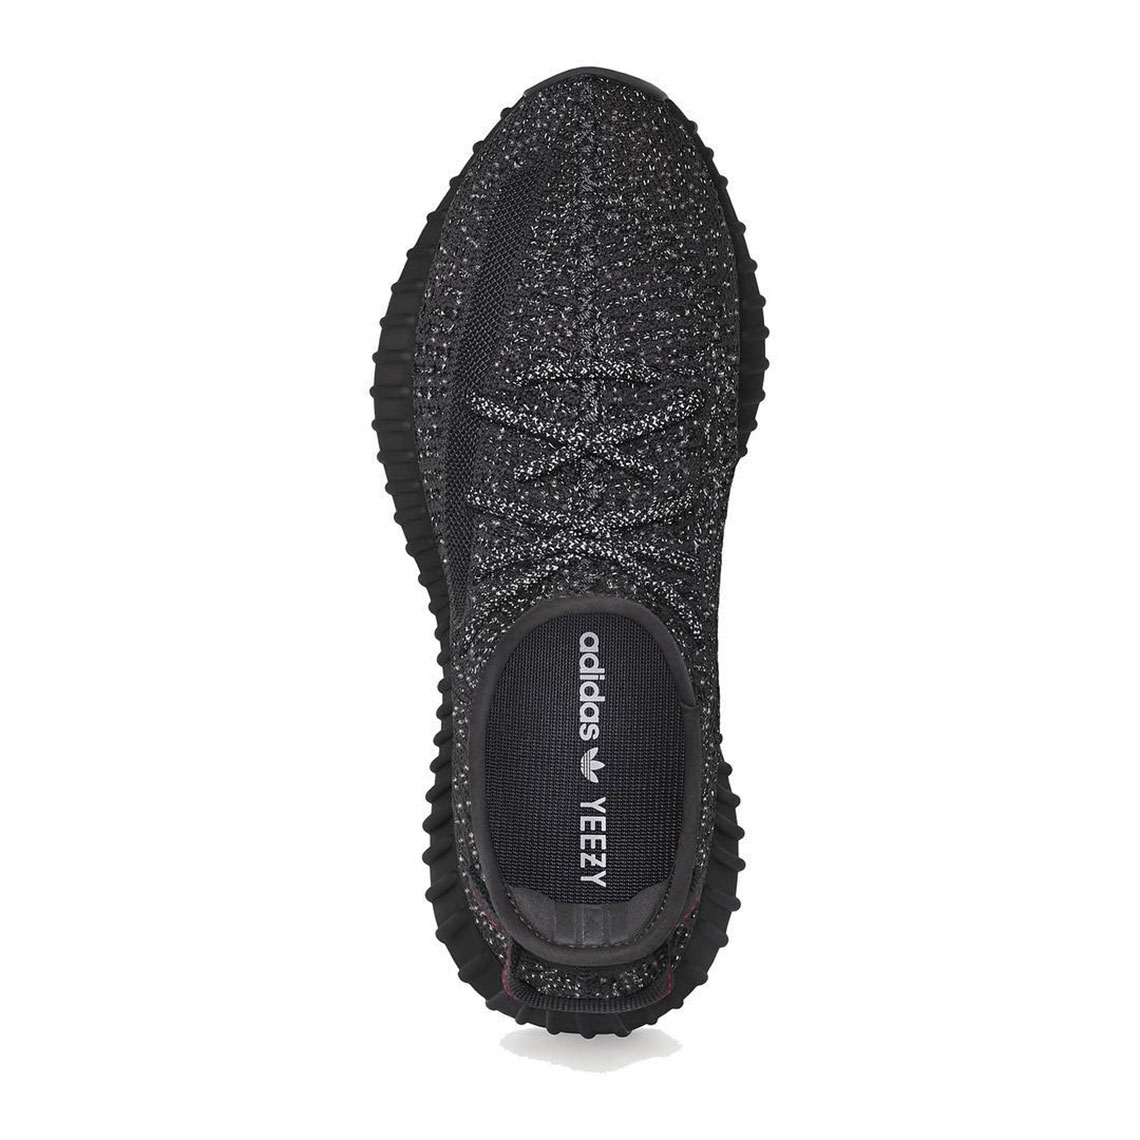 Adidas Yeezy Boost 350 V2 'Black Reflective' - Bonjor Outlet